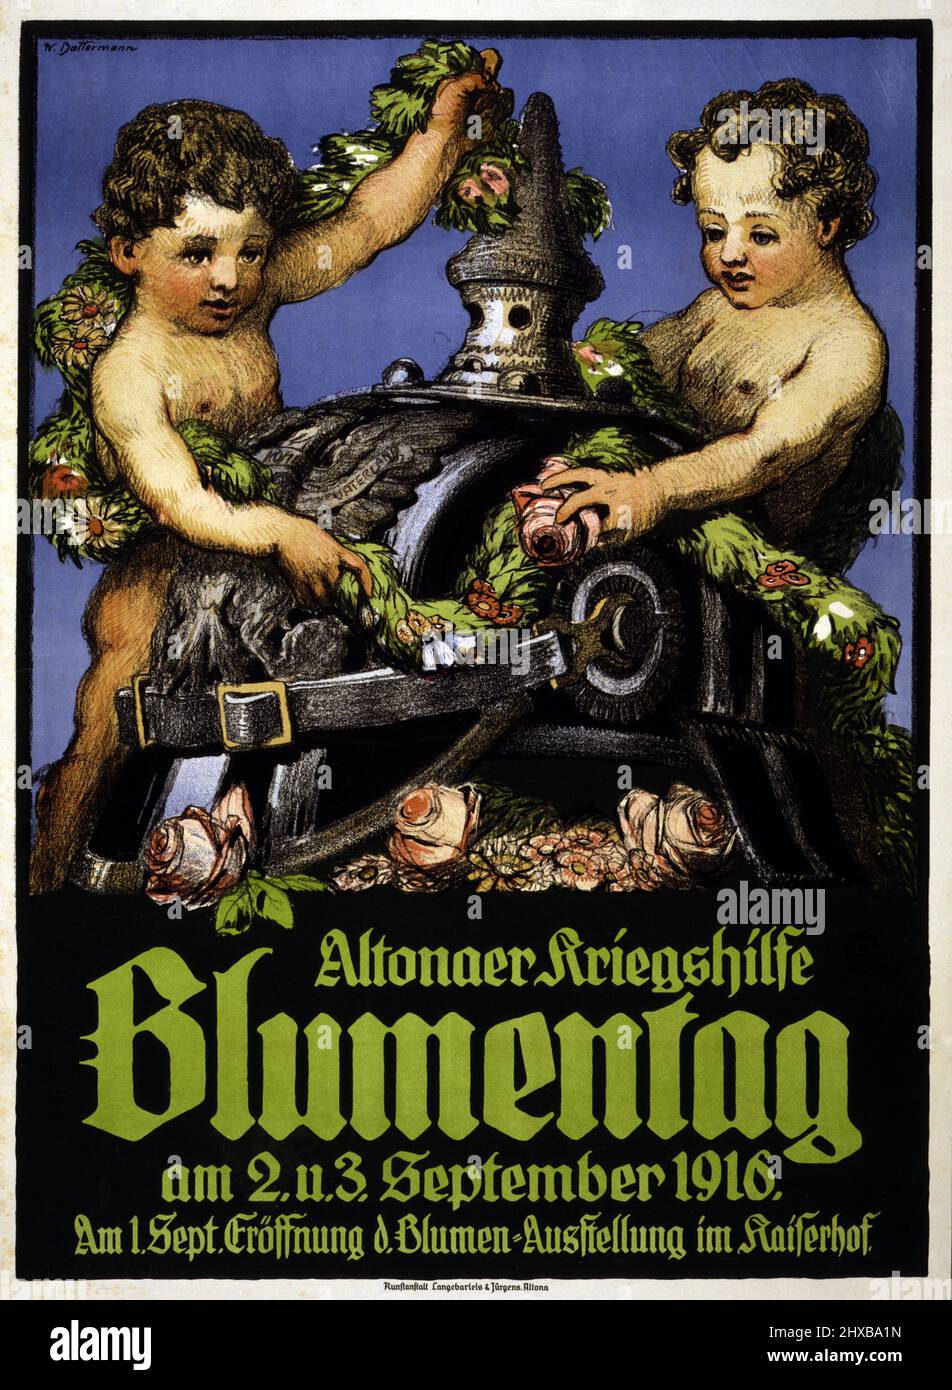 Altonaer Kriegshilfe Blumentag de Wilhelm Battermann, 1916. Affiche montrant deux chérubins décorant un casque allemand avec guirlande de fleurs. Banque D'Images